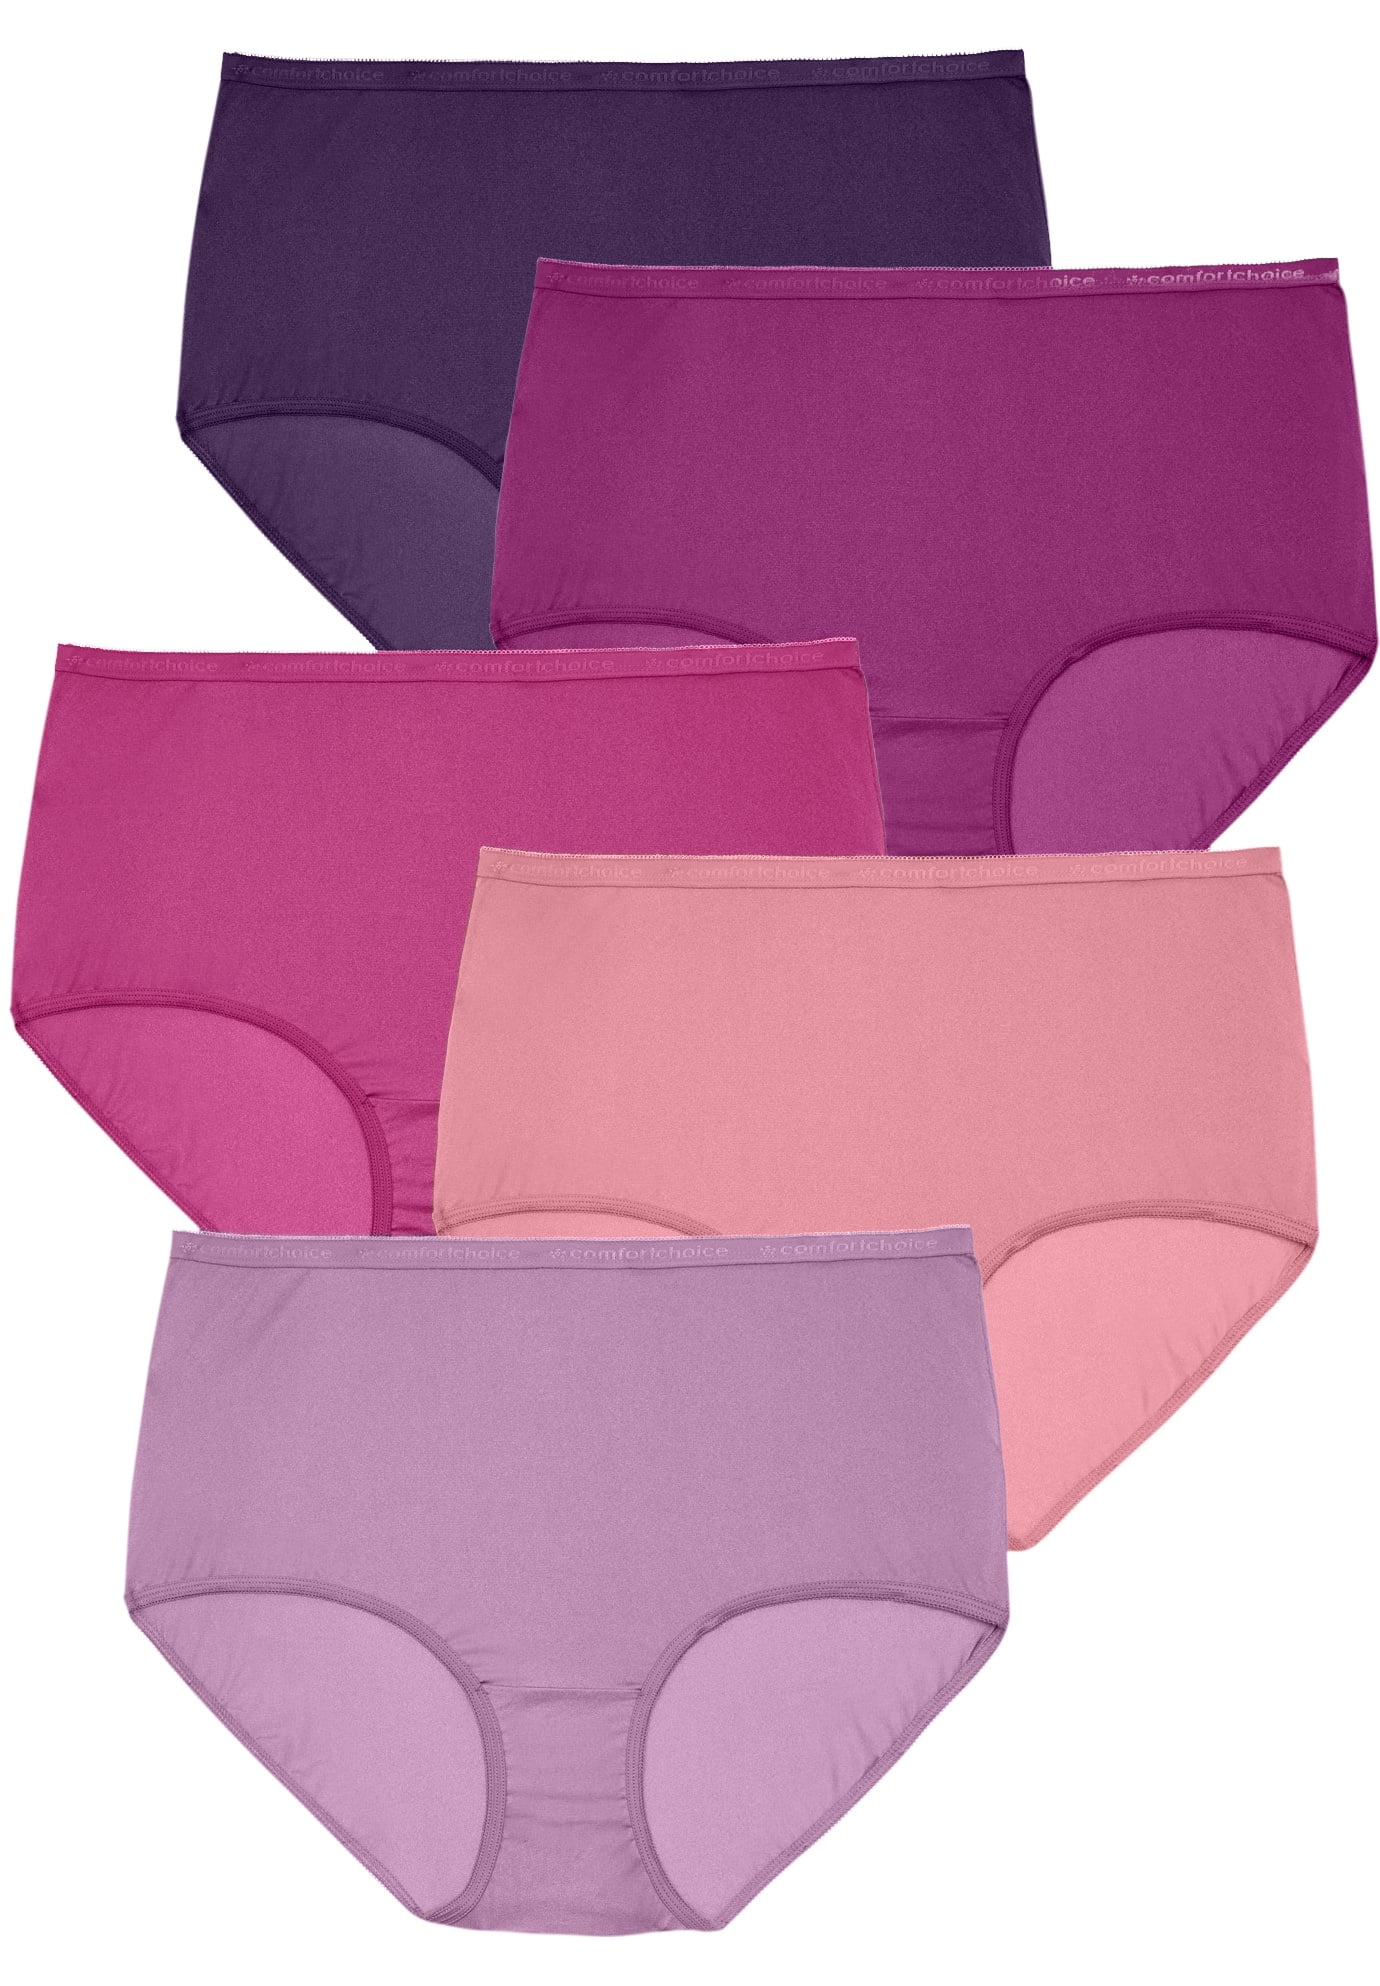 Barbras 6 Pack Womens Plus Size Nylon Brief Underwear Panties X-Large